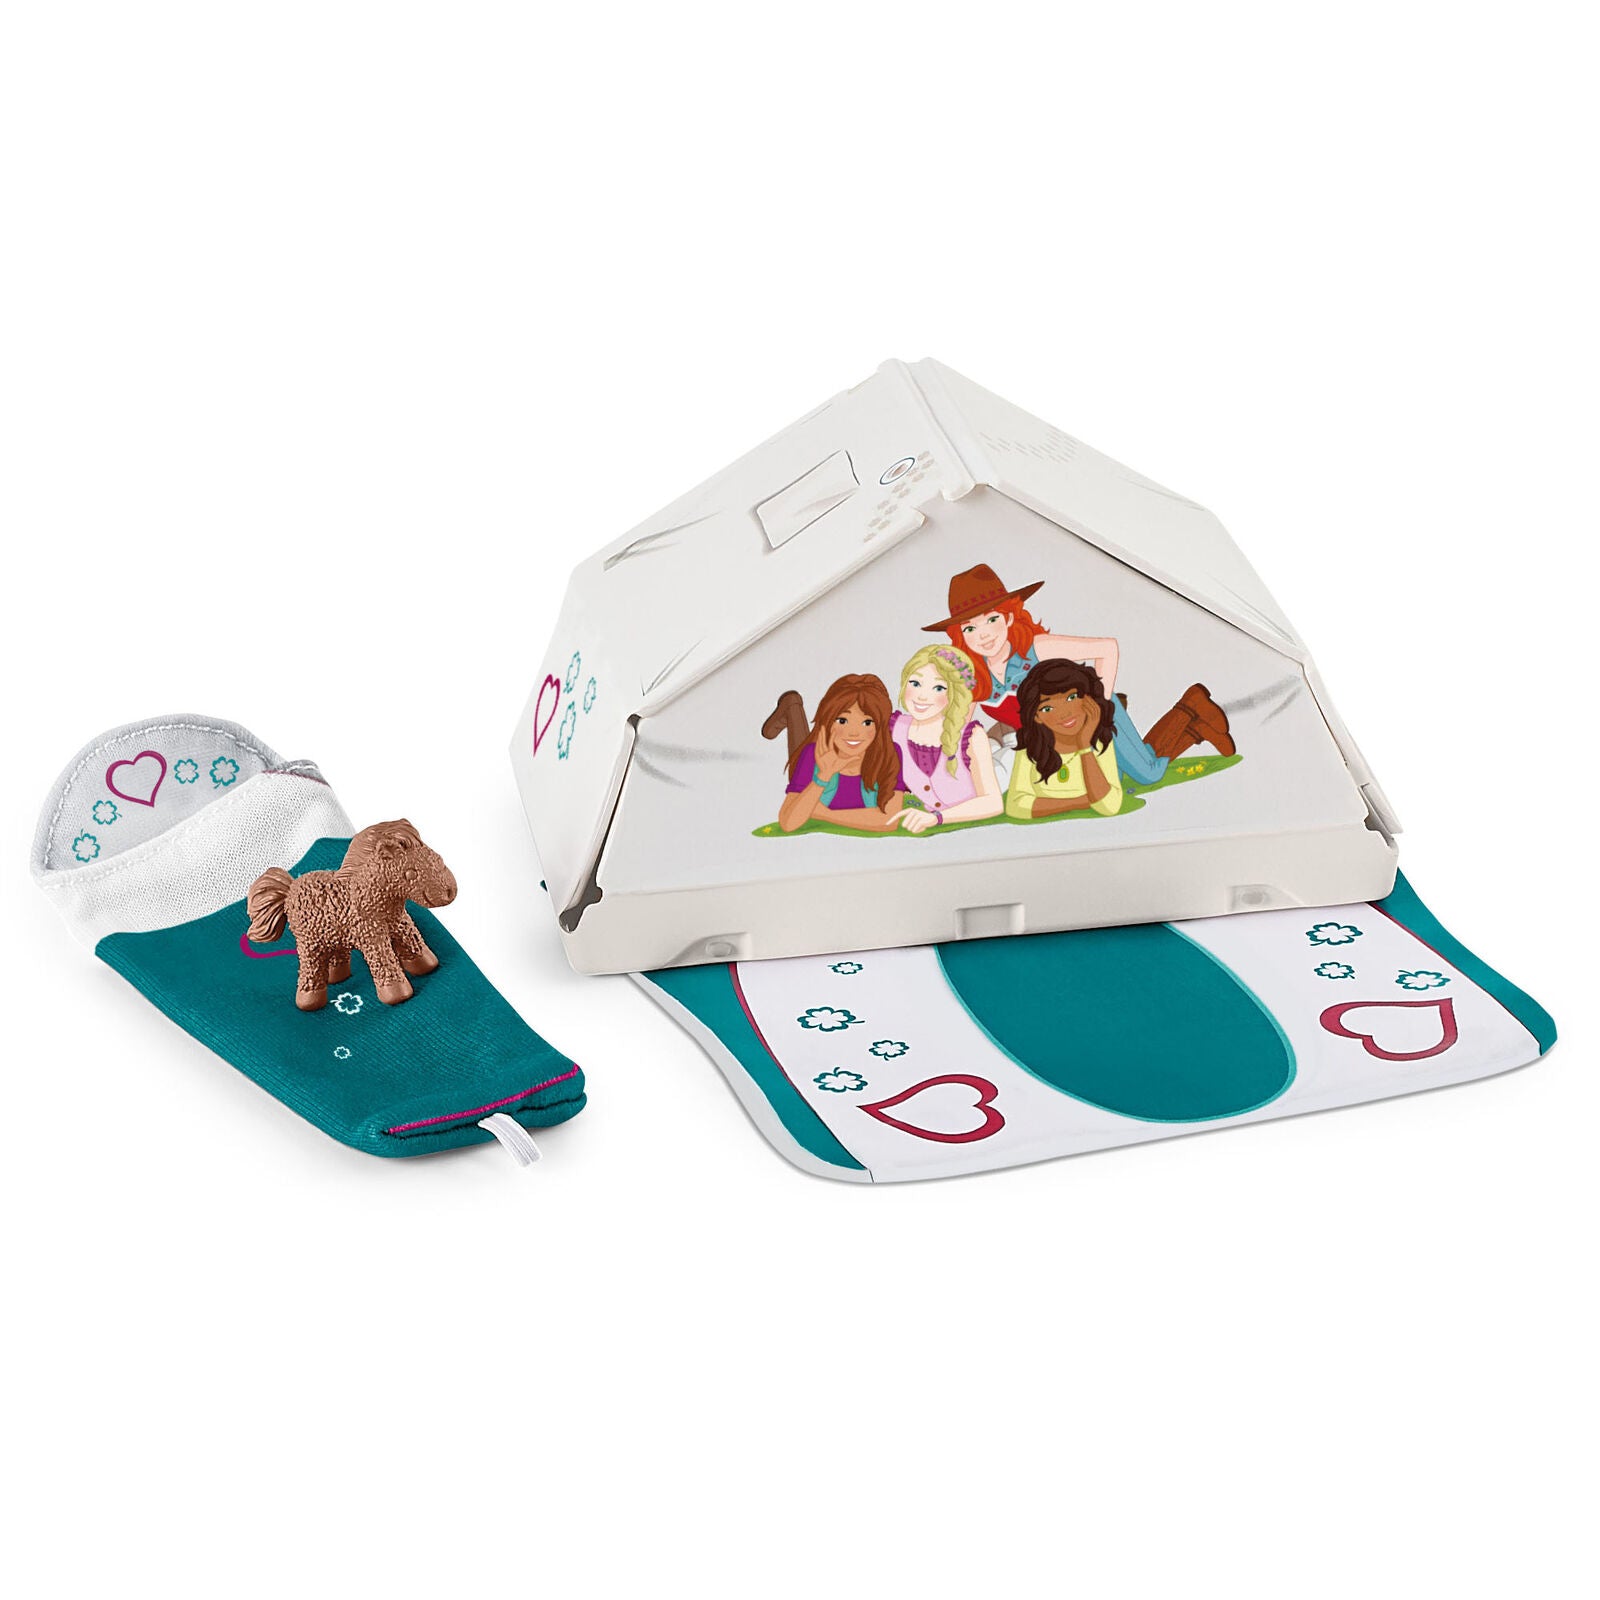 Schleich 42537 Camping Tent & Accessories Horse Club Playset Girls Children 5yr+